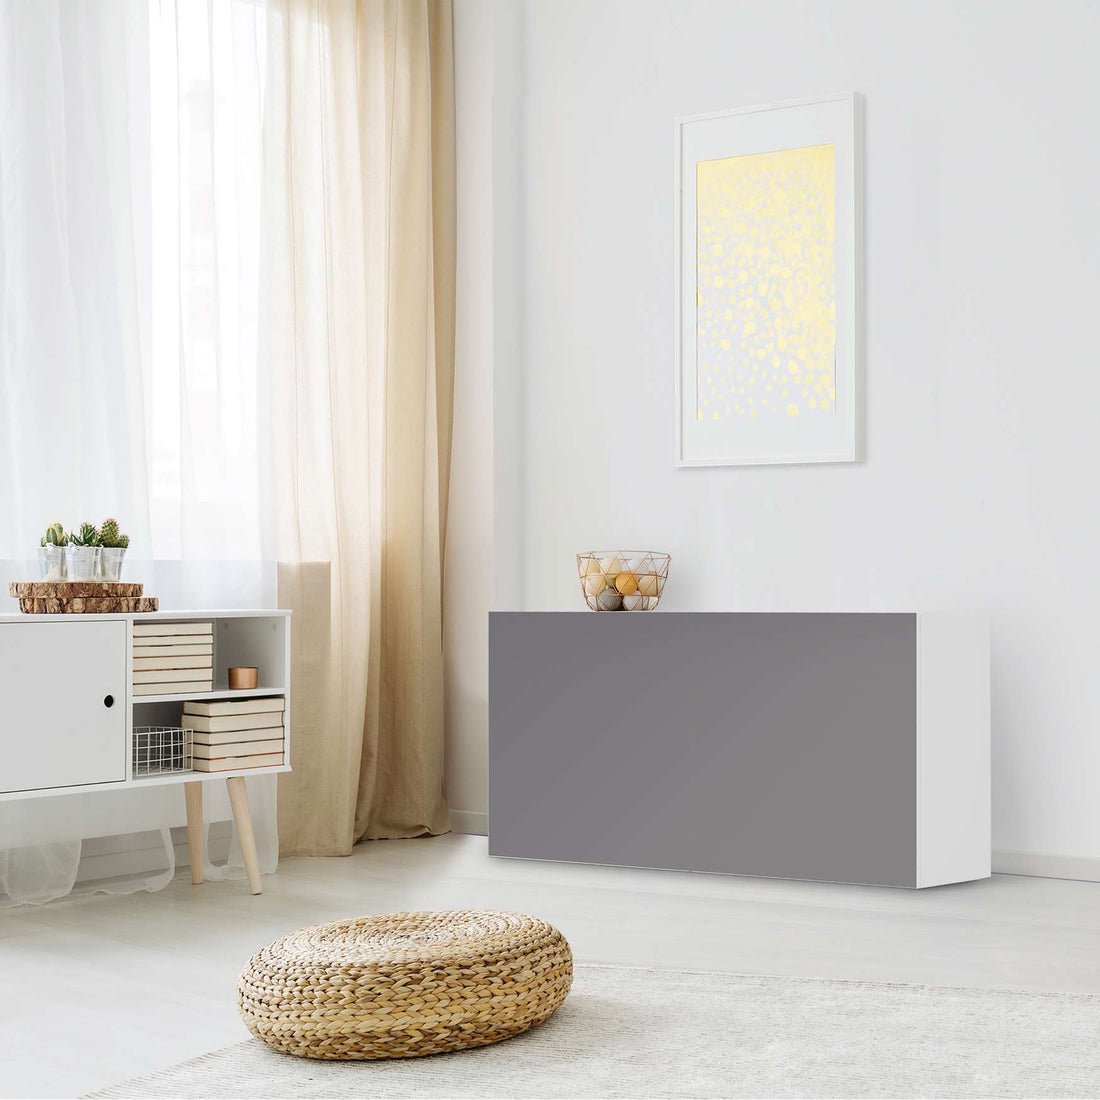 Folie für Möbel Grau Light - IKEA Besta Regal Quer 2 Türen - Wohnzimmer